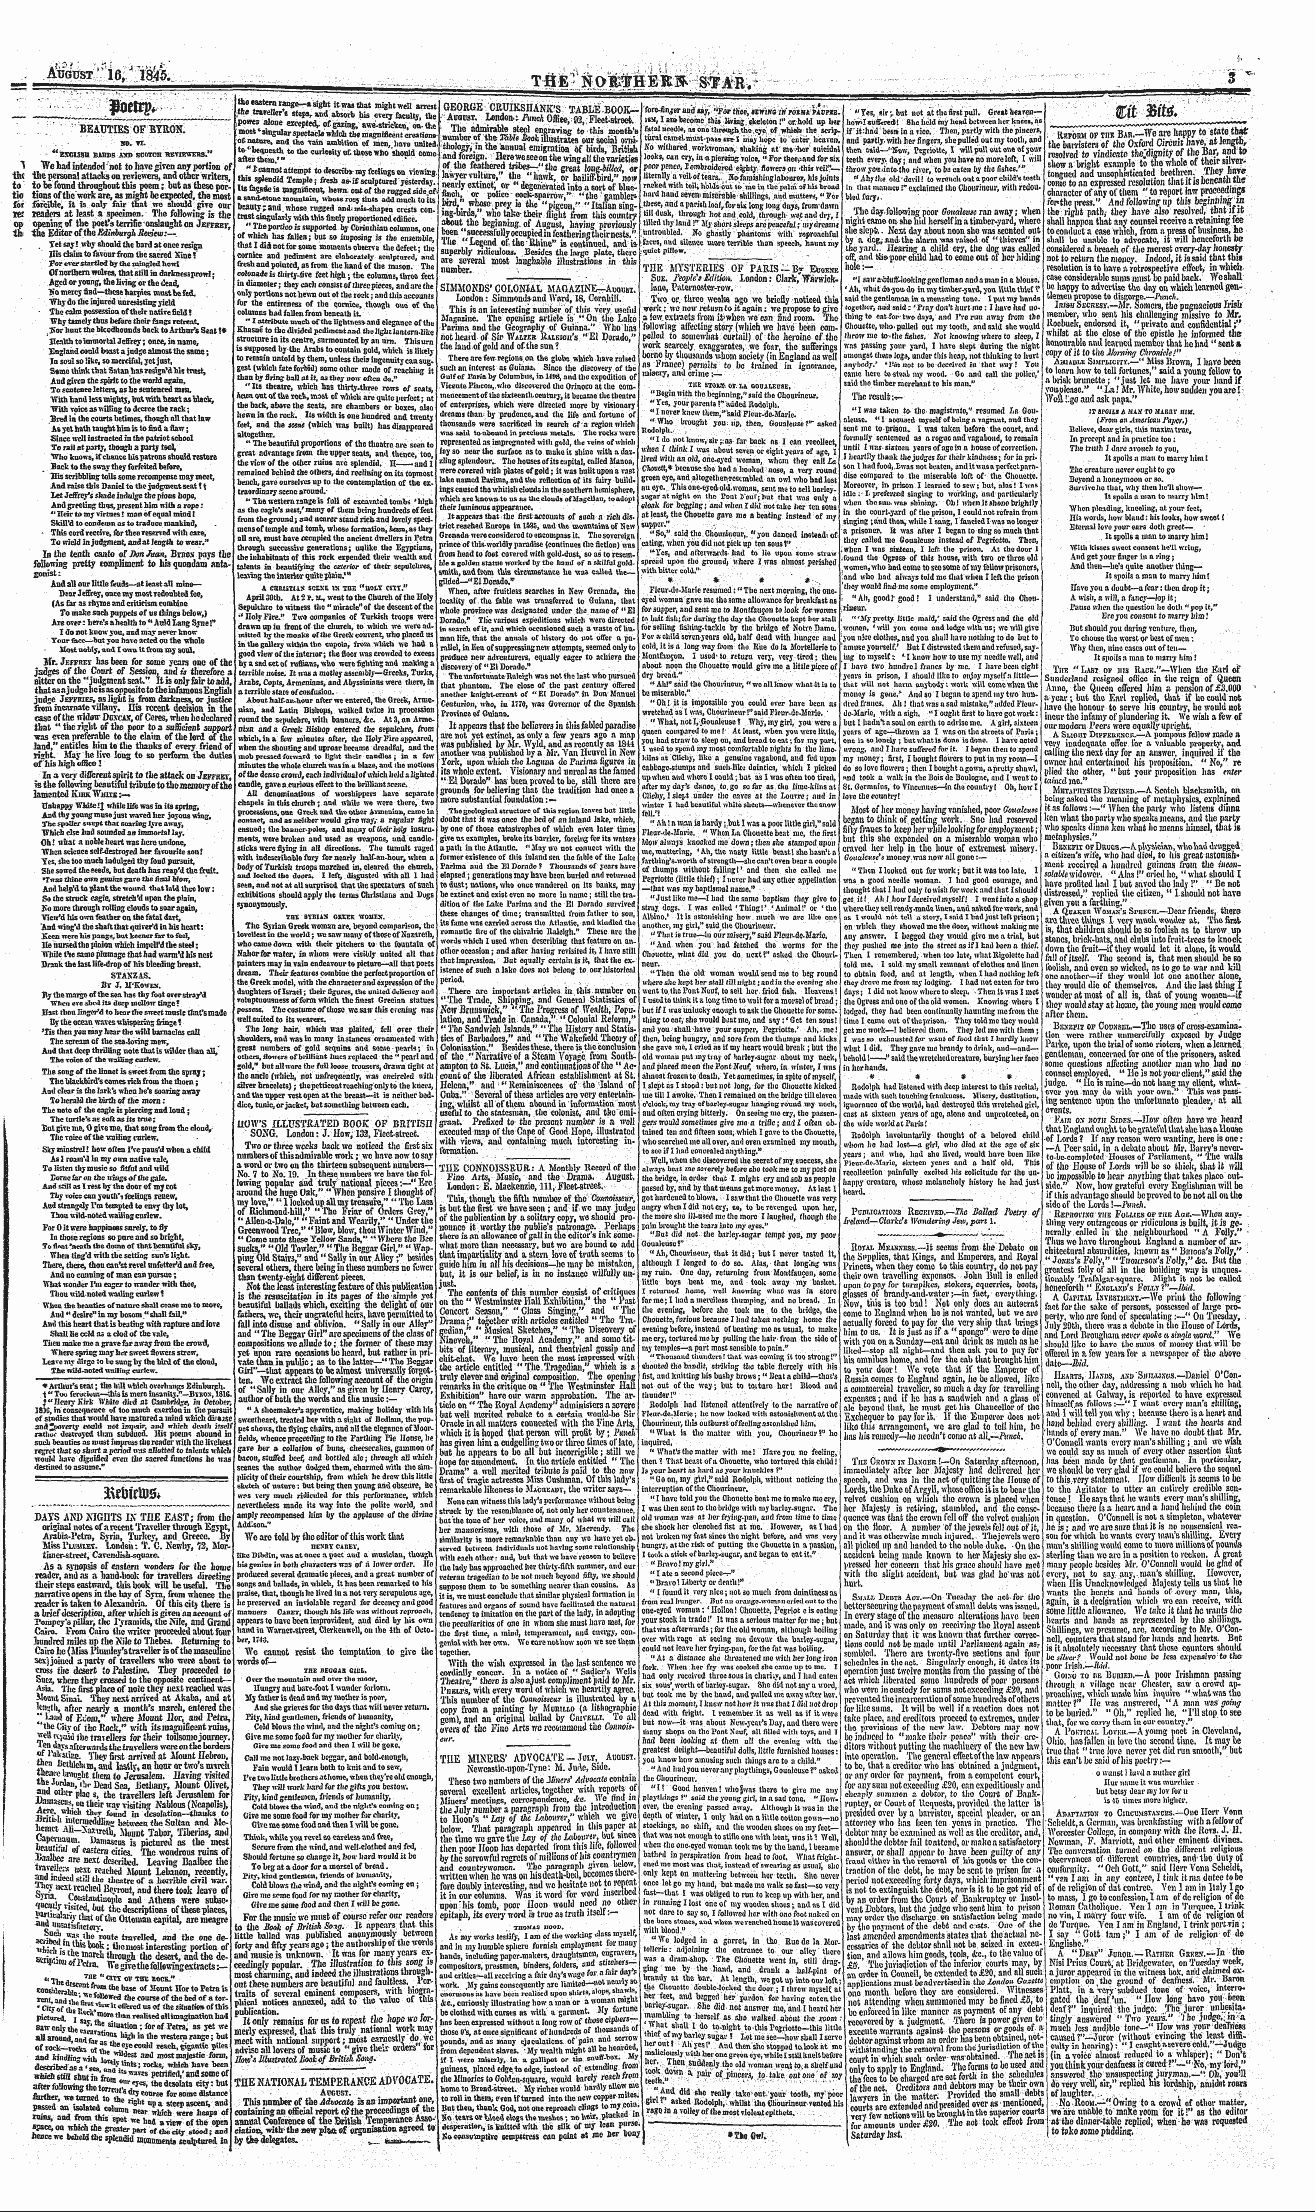 Northern Star (1837-1852): jS F Y, 3rd edition - Im\M